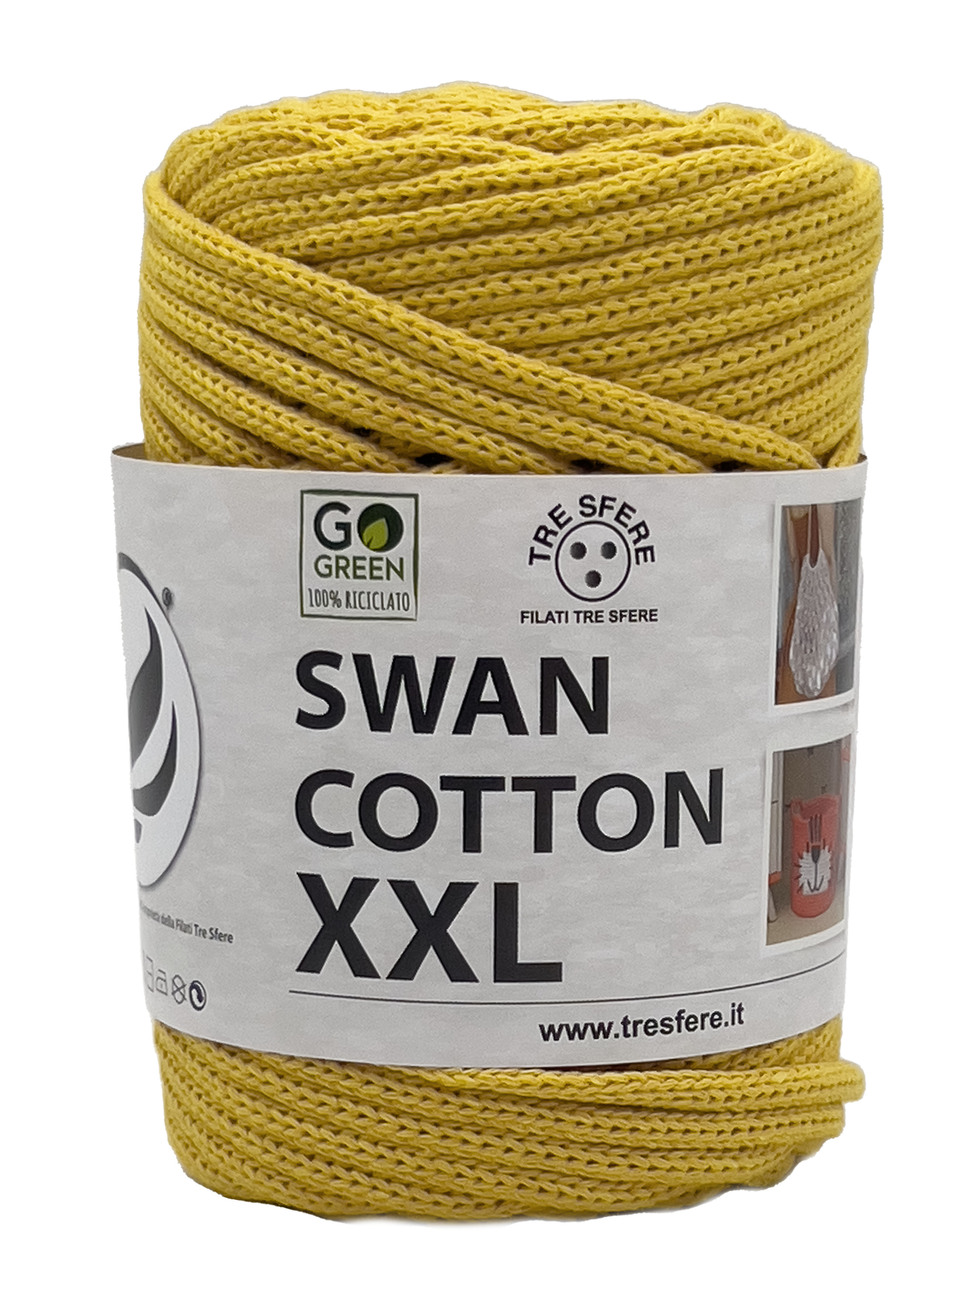 CORDINO SWAN COTTON XXL 250 grammi - Giallo